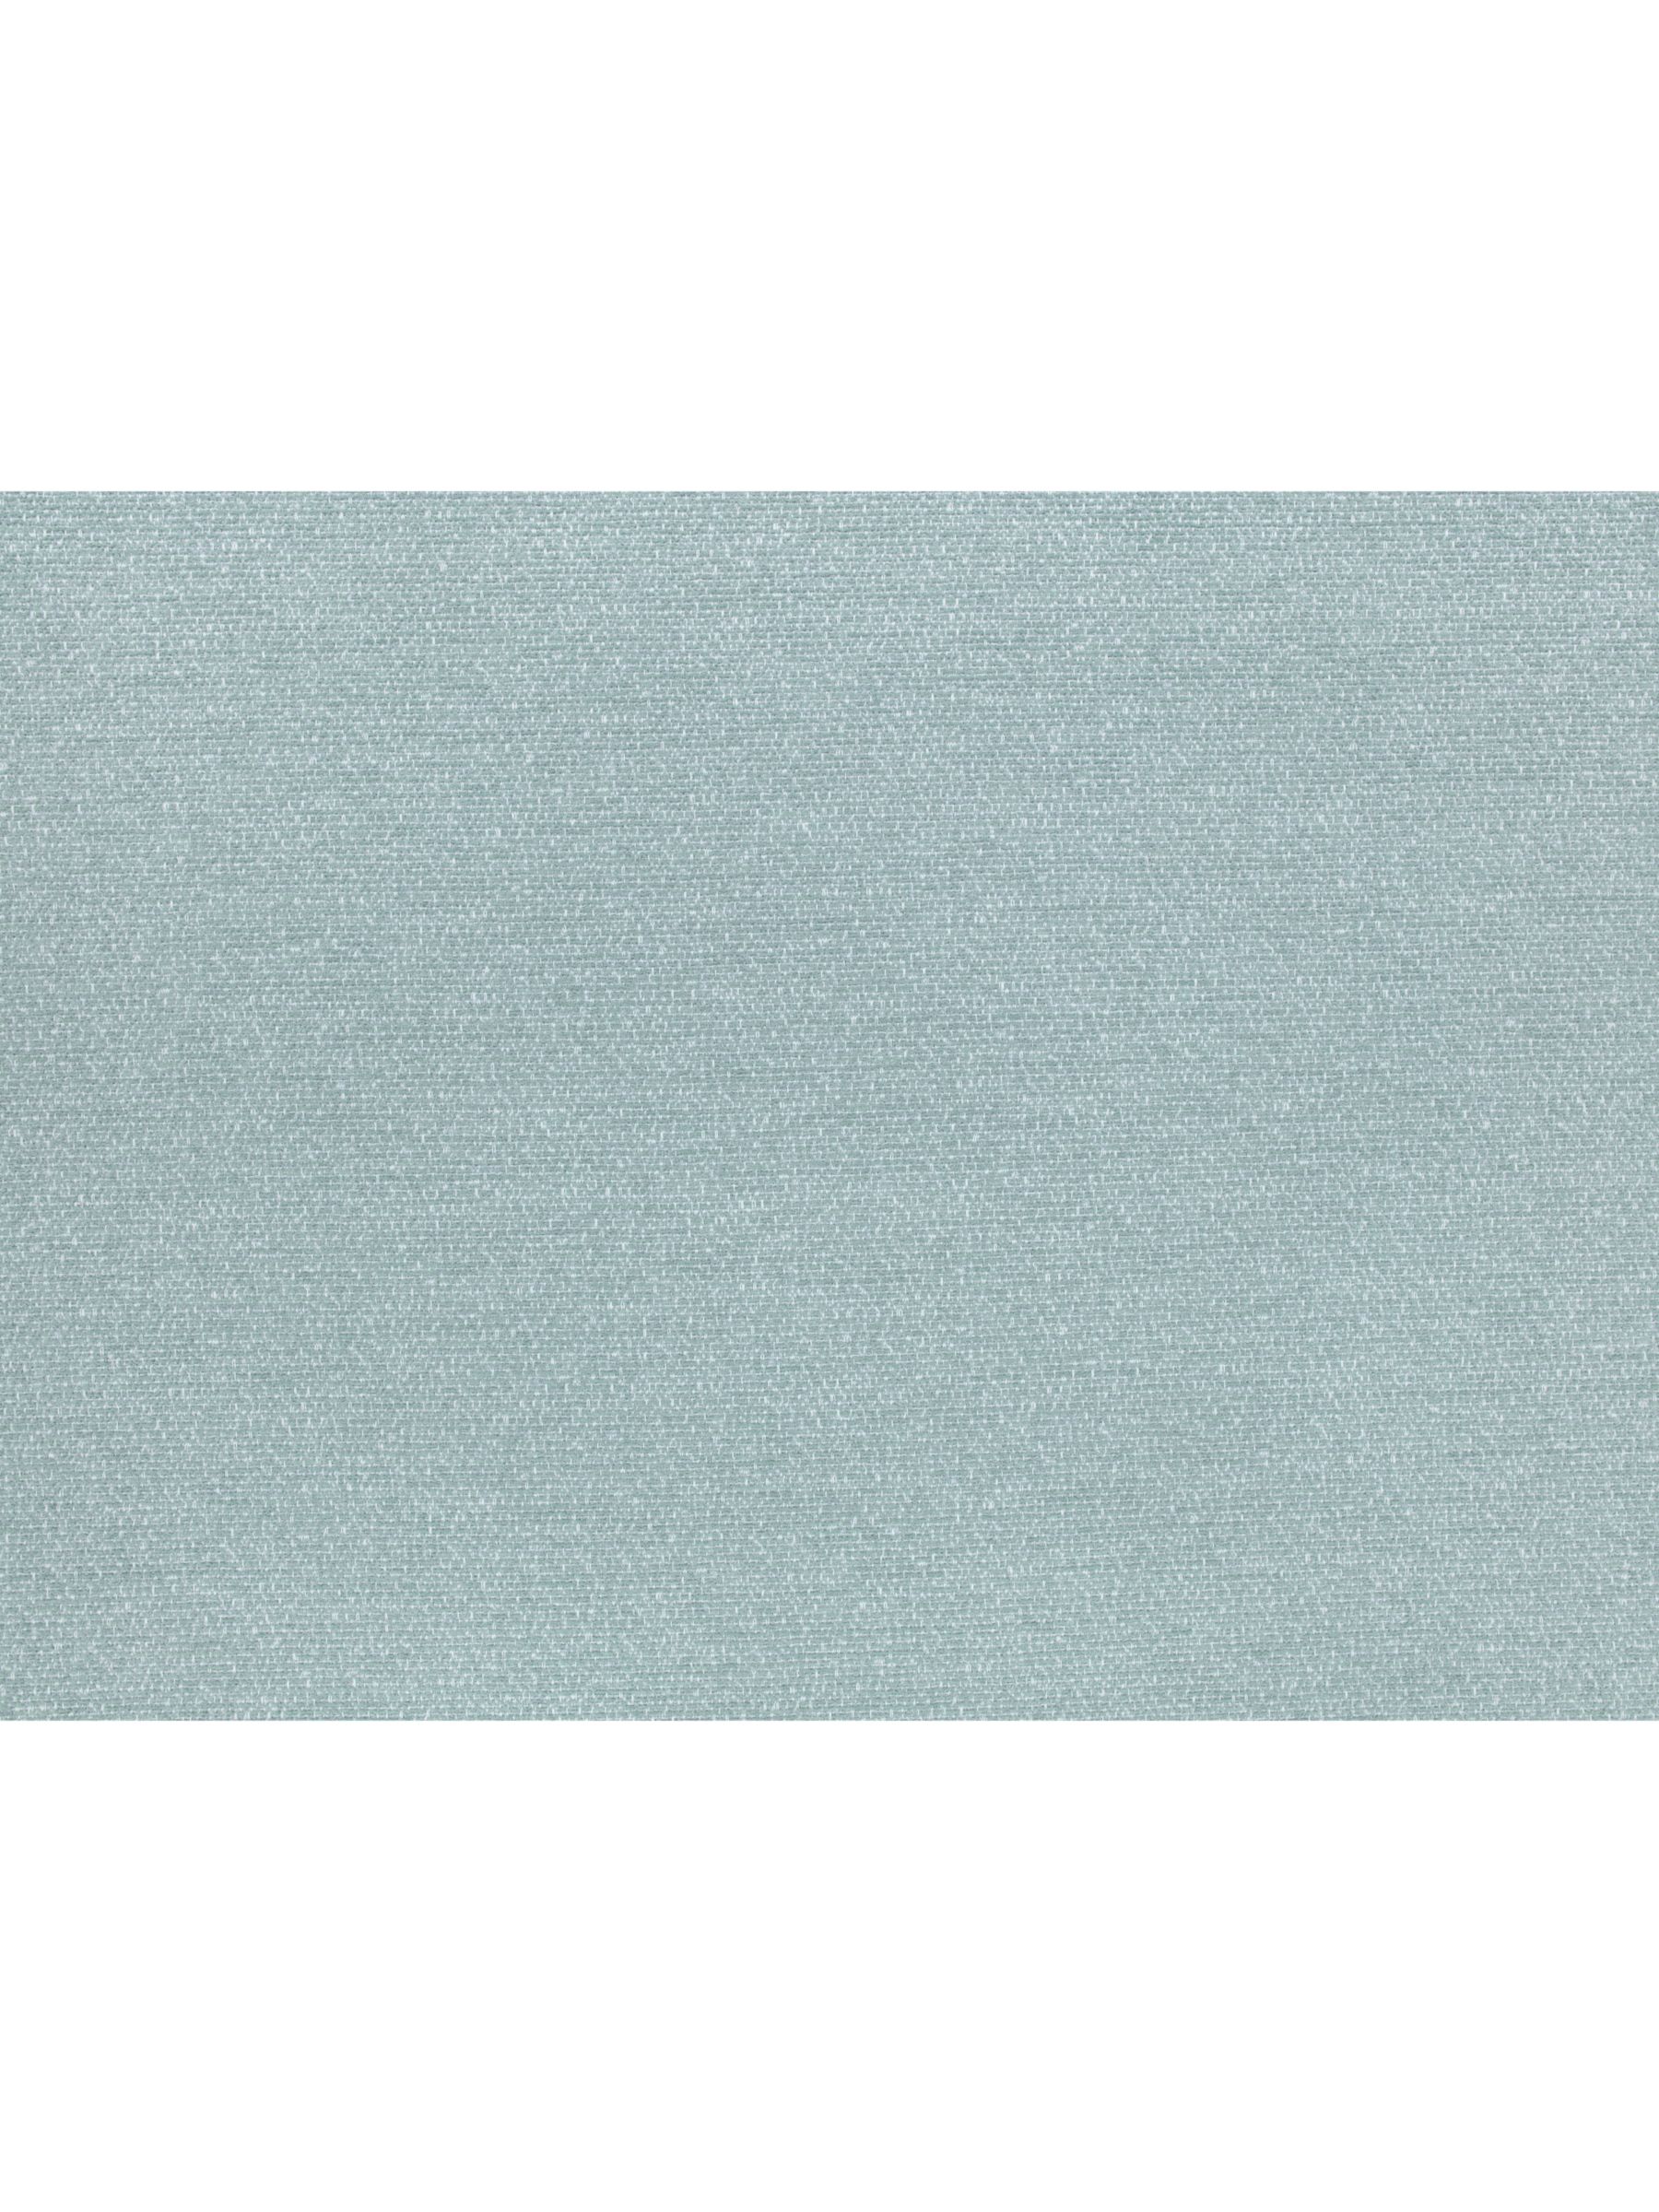 Romo Magma Furnishing Fabric, Aquamarine